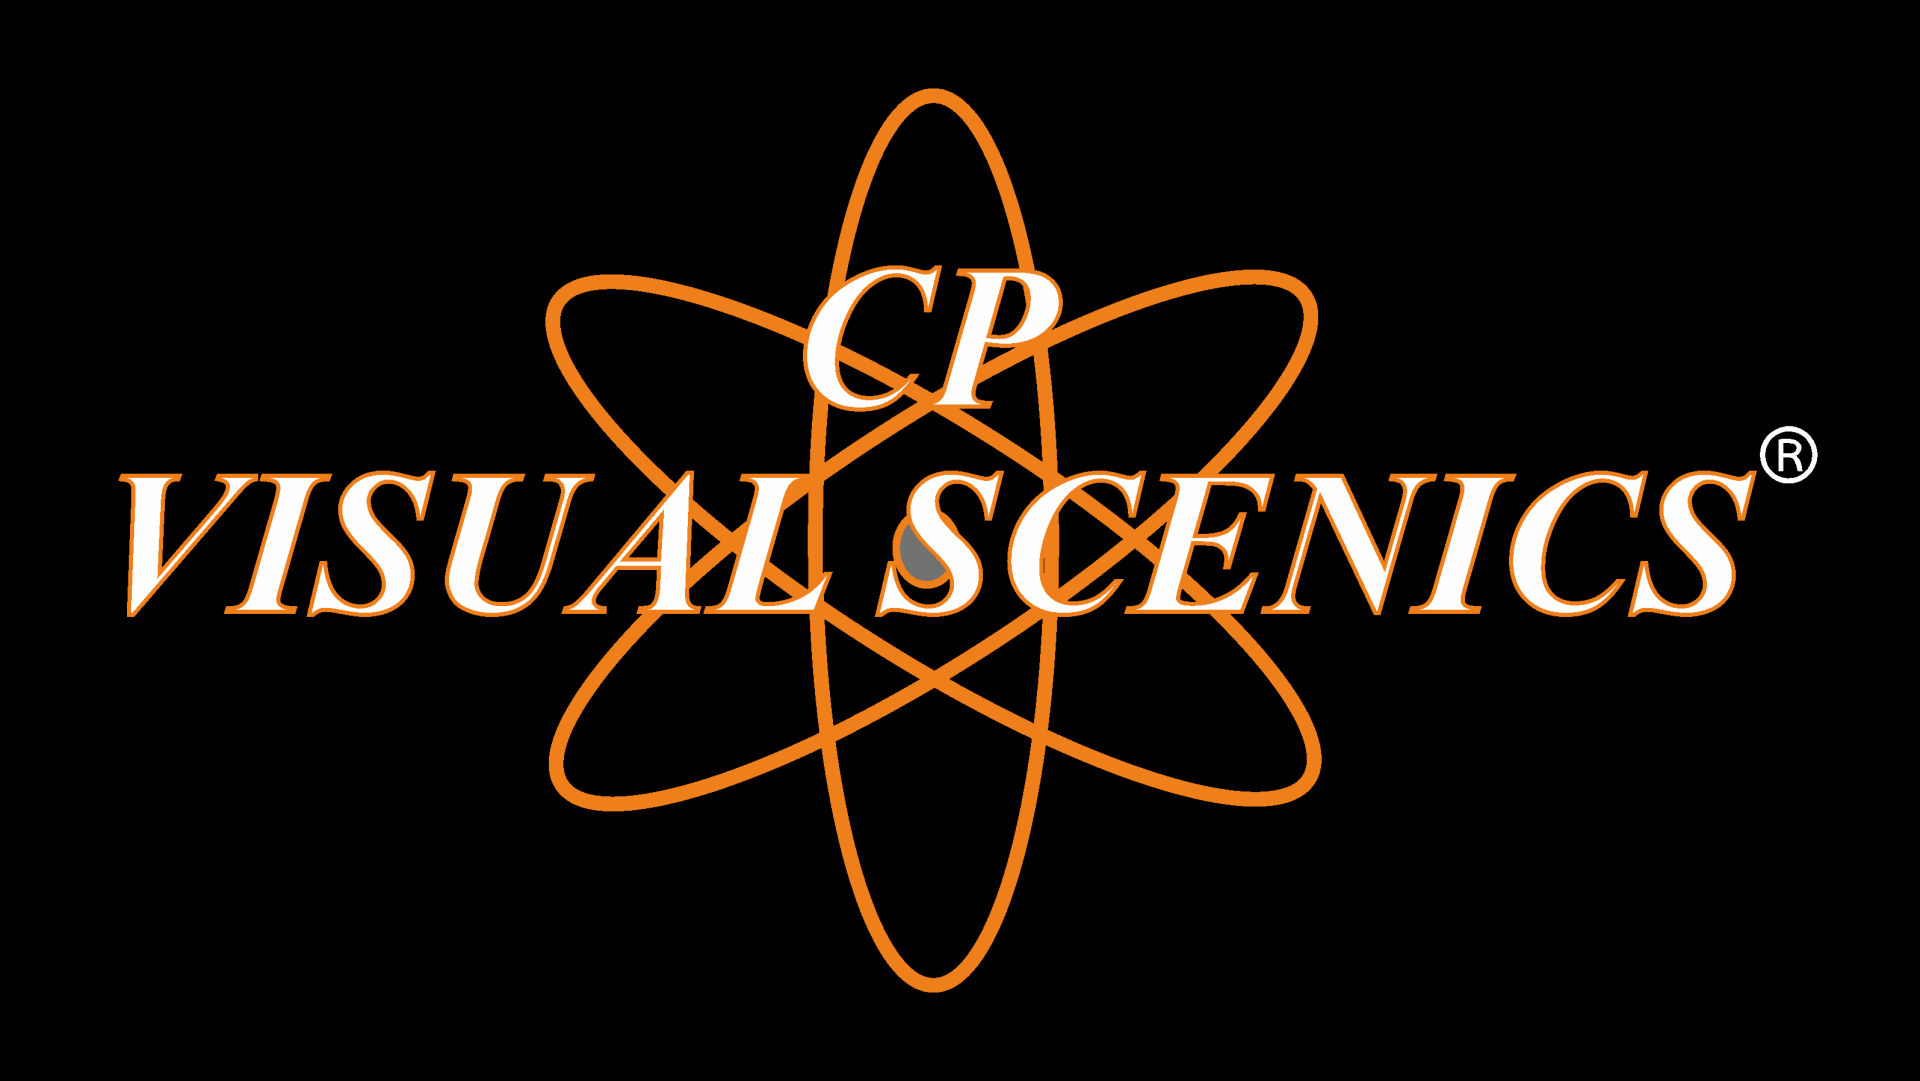 CP VISUAL SCENICS